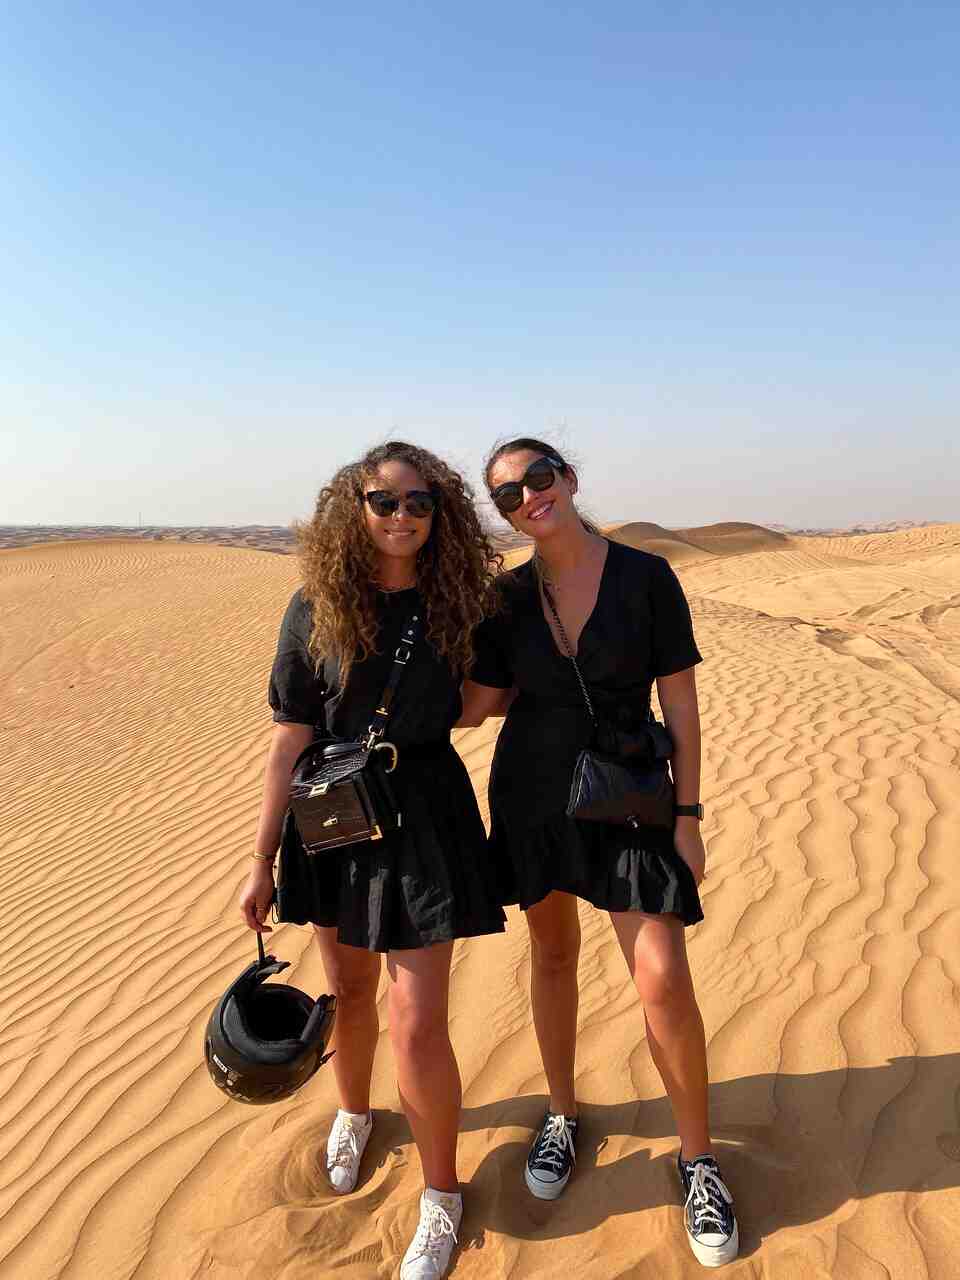 Comment s'habiller pour aller dans le désert Dubai ?